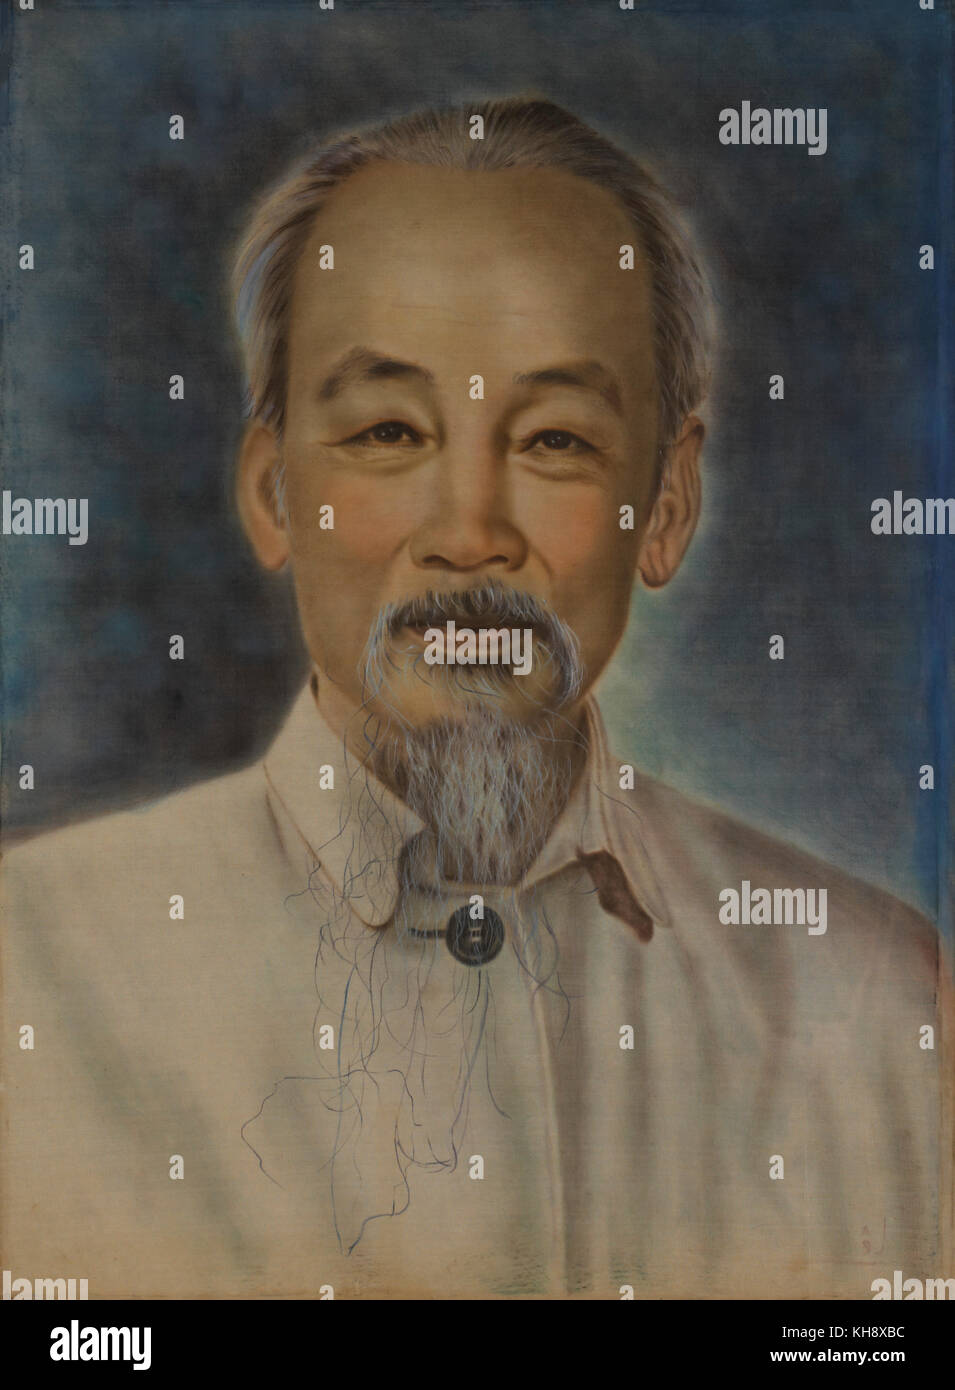 Ho chi minh (1890-1969), leader nationaliste vietnamien, portrait Banque D'Images